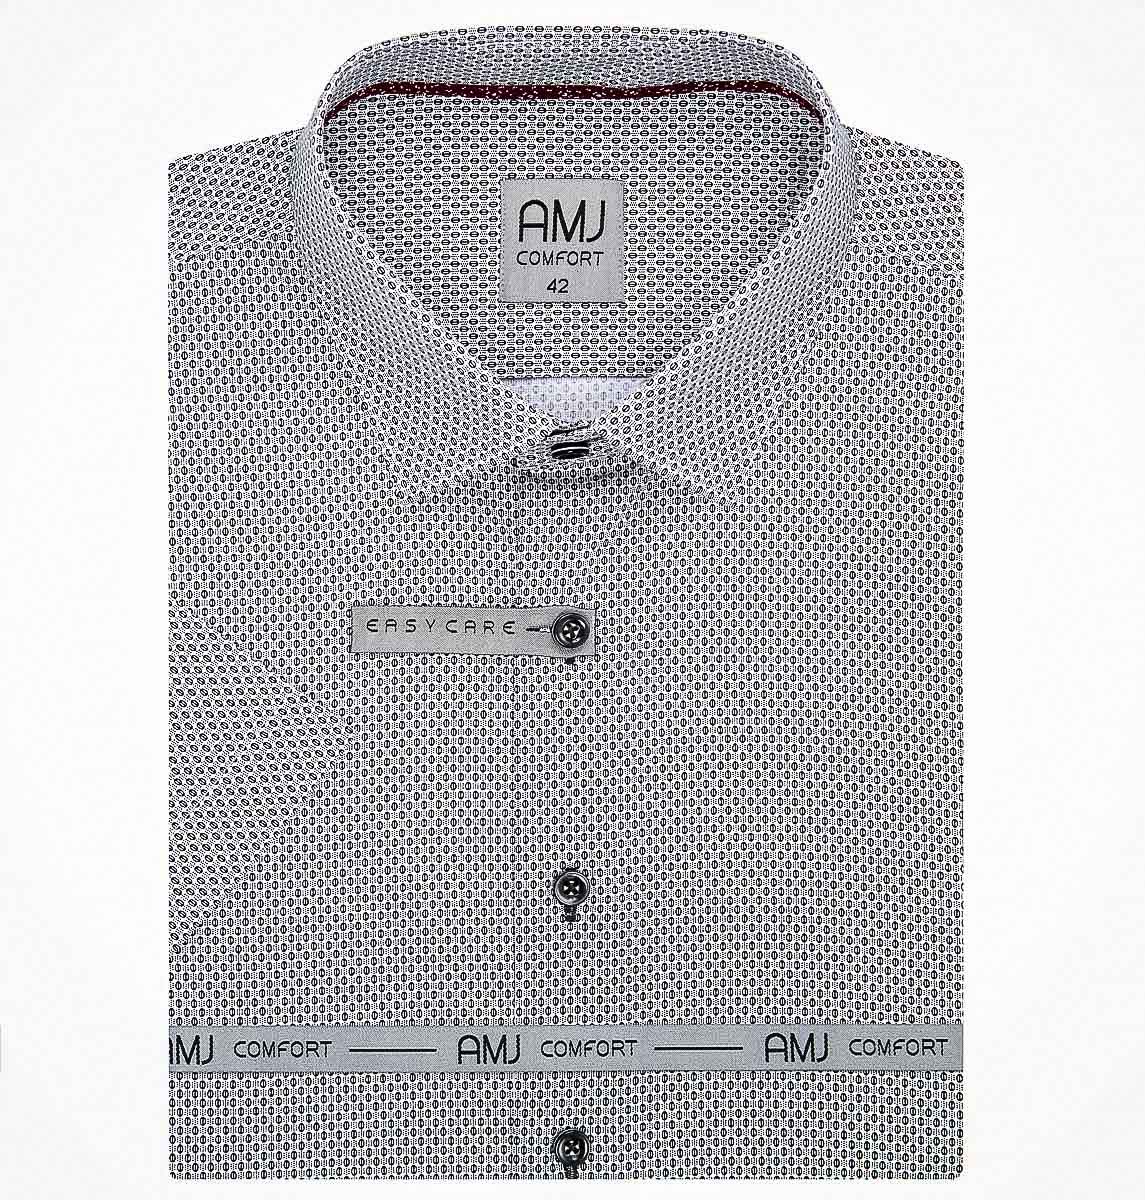 Pánská košile AMJ bavlněná, bílá s černými puntíky a tečkami VKBR1198, krátký rukáv (regular + slim fit)